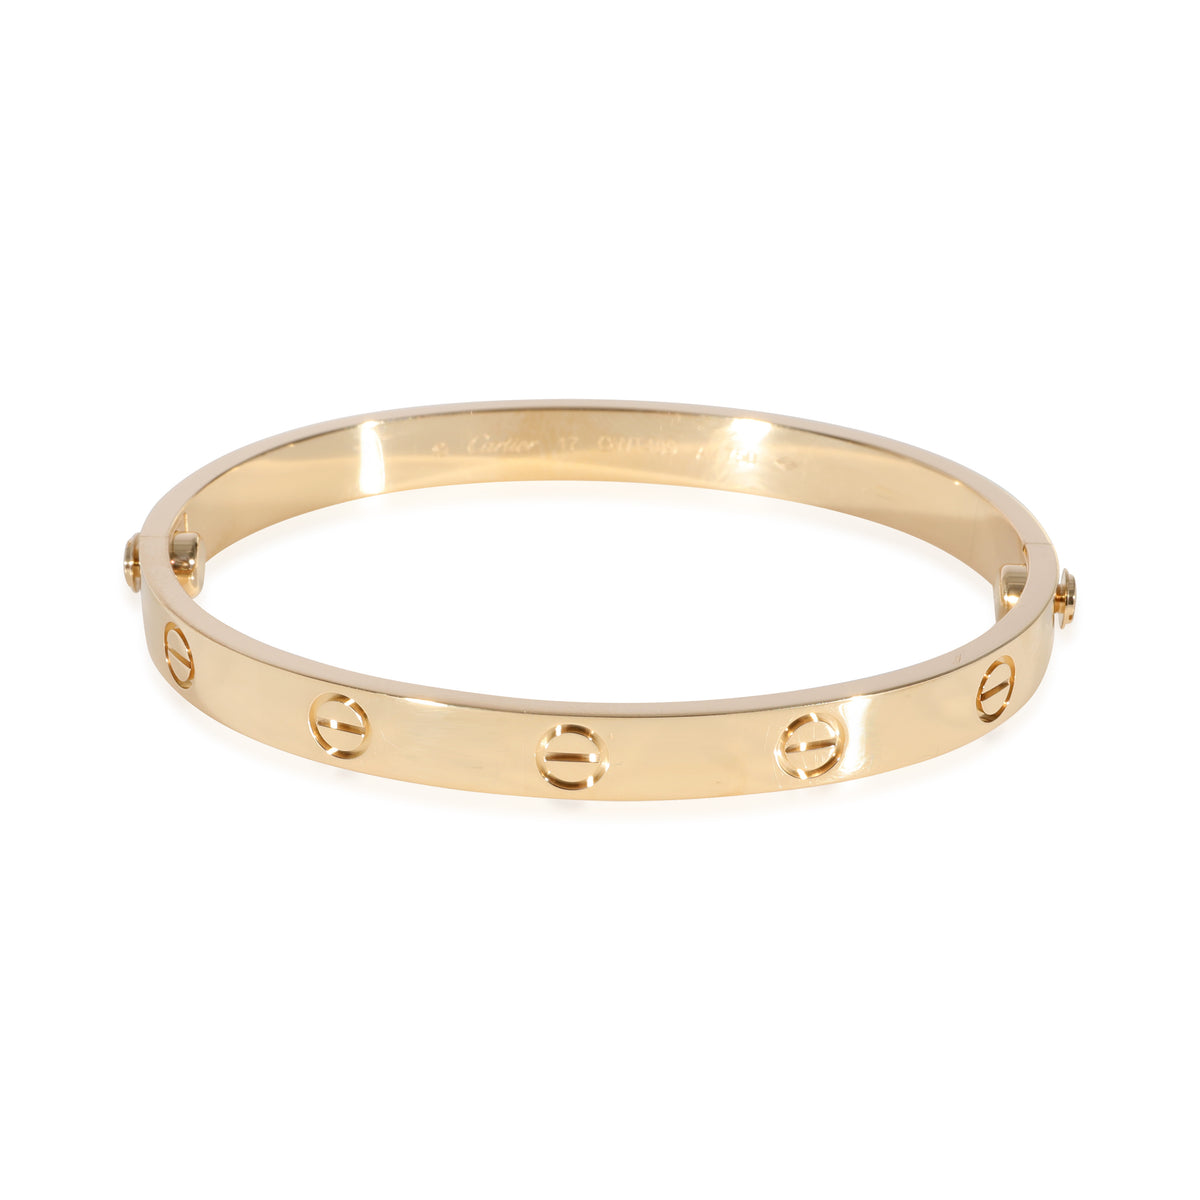 Cartier Love Bracelet in 18k Yellow Gold, Size 17